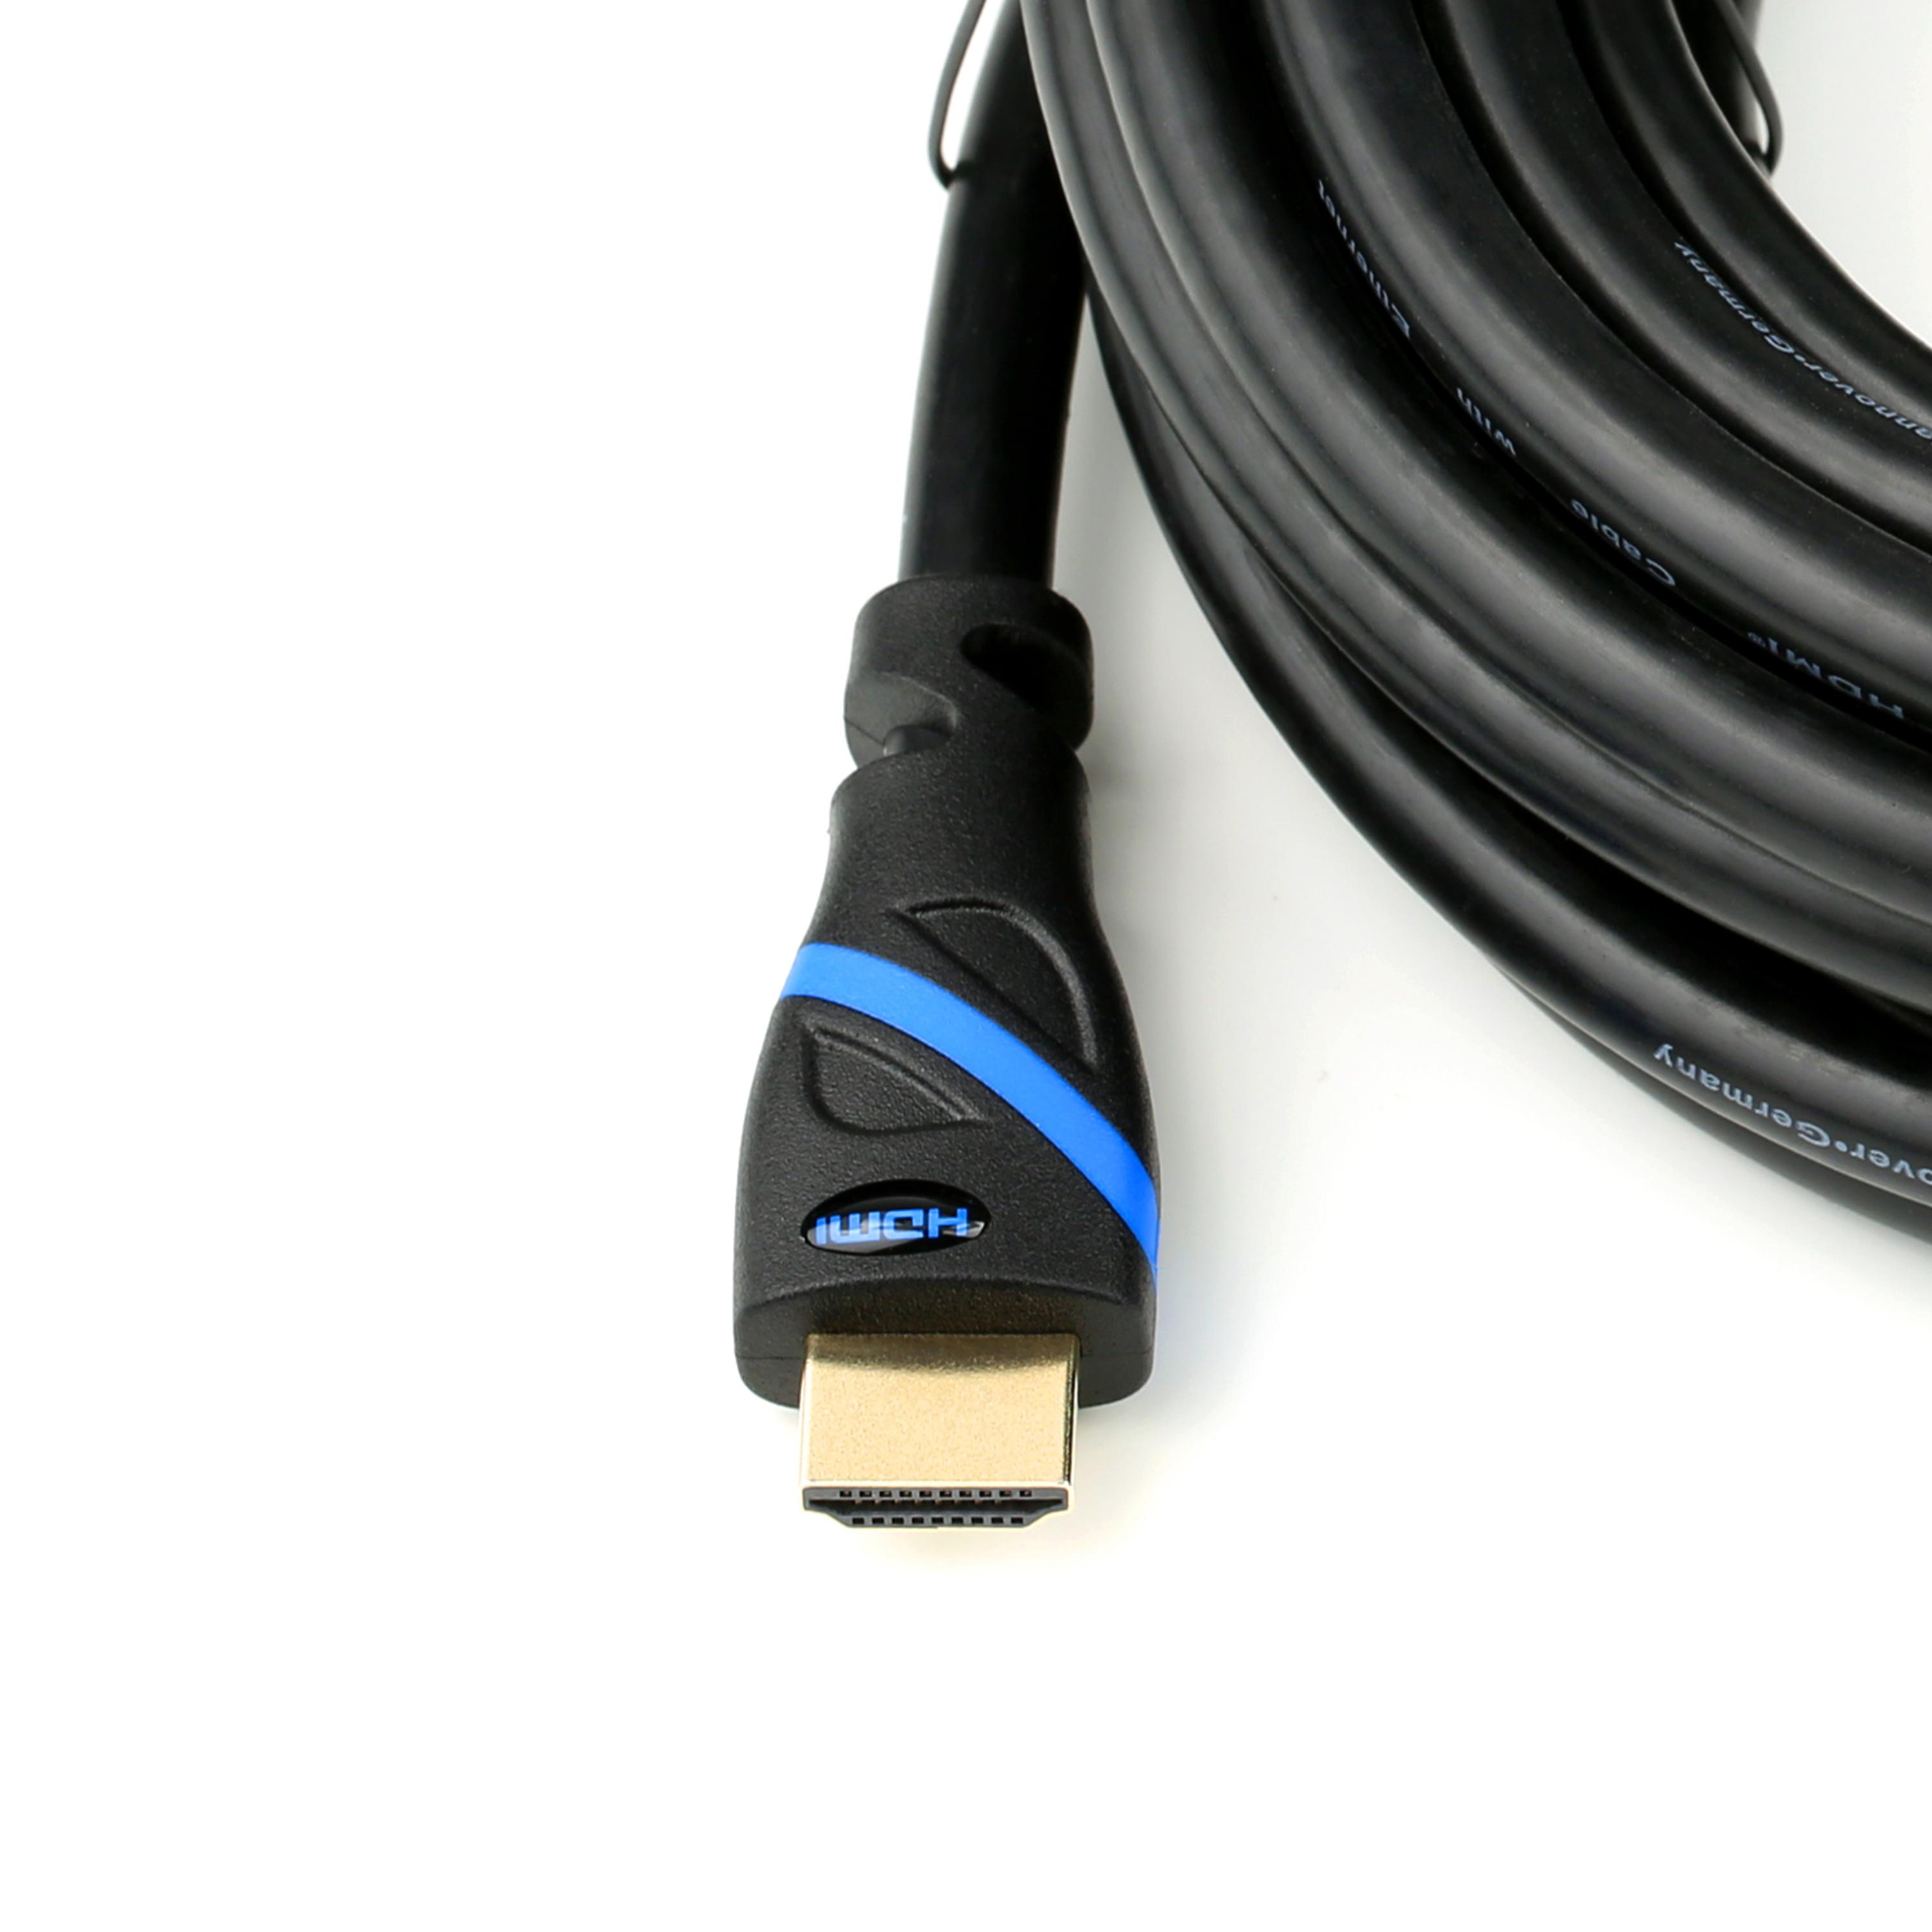 2.0 HDMI 2m HDMI schwarz/blau Kabel, Kabel, CSL